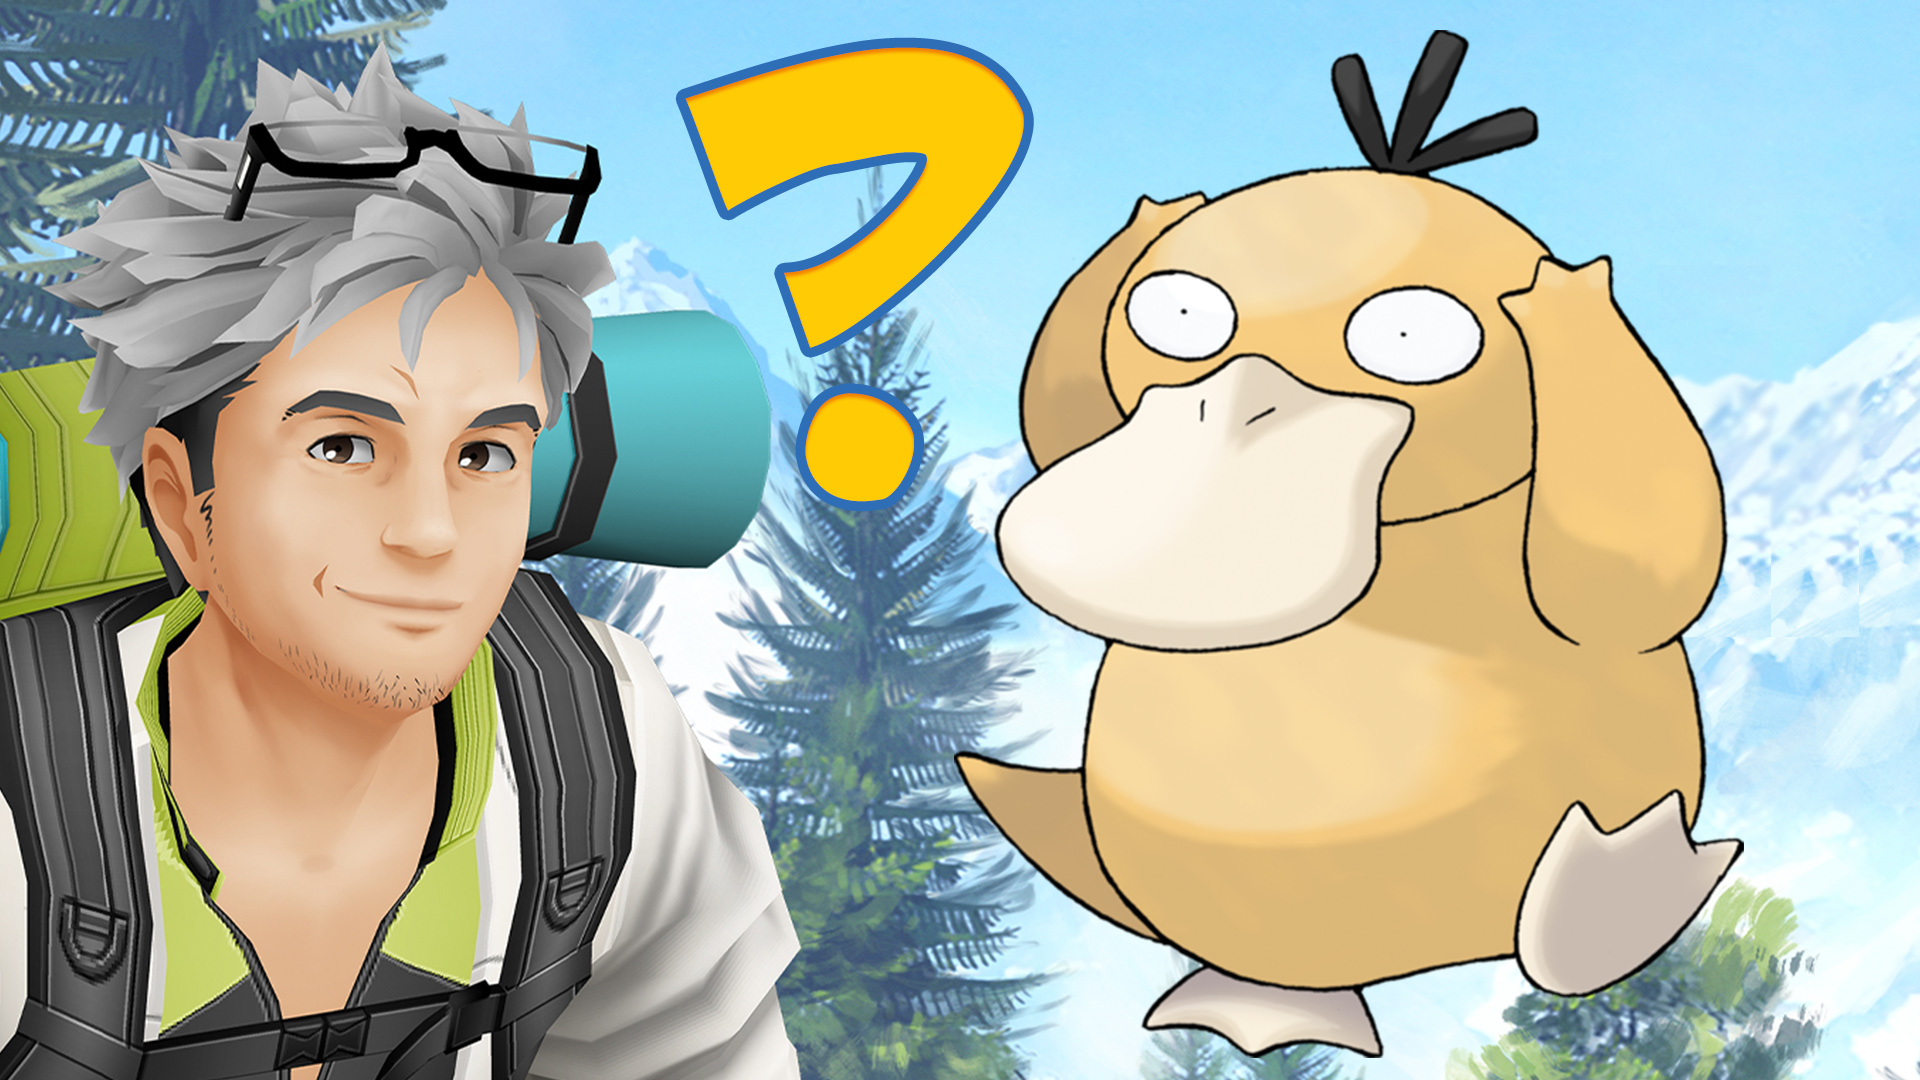 Título de la prueba de Pokémon GO Enton Willow pregunta signo de interrogación